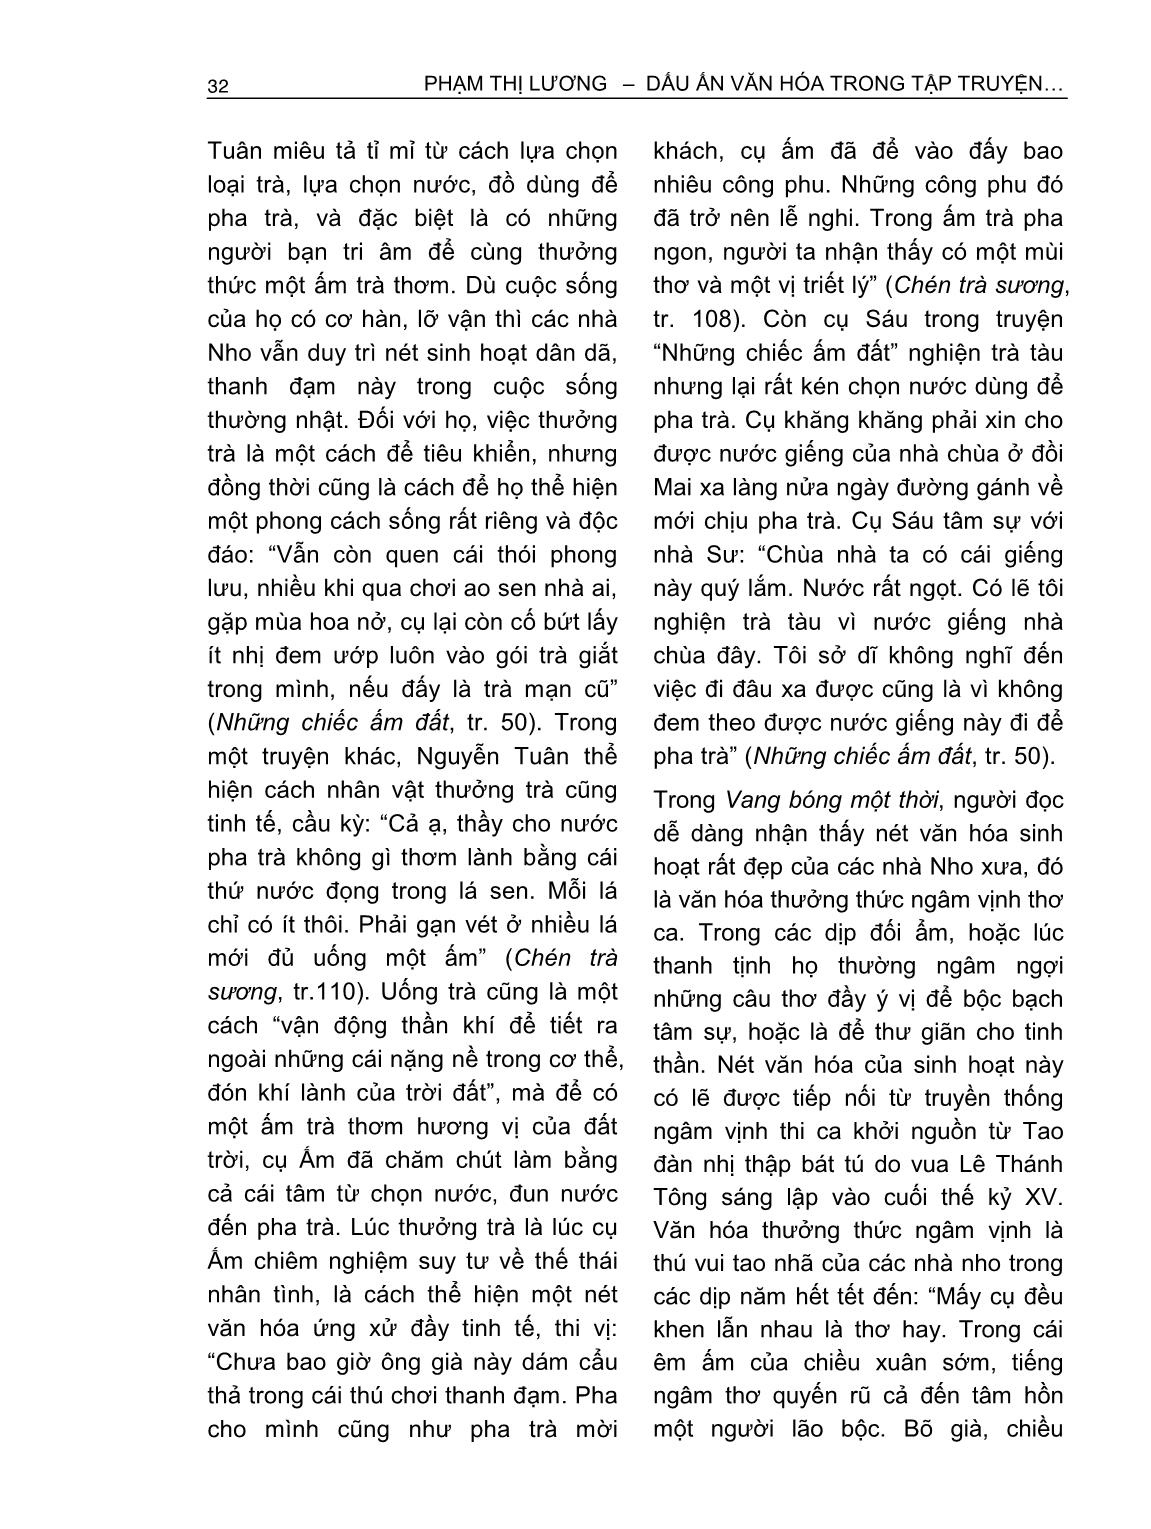 Dấu ấn văn hóa trong tập truyện vang bóng một thời của Nguyễn Tuân trang 8